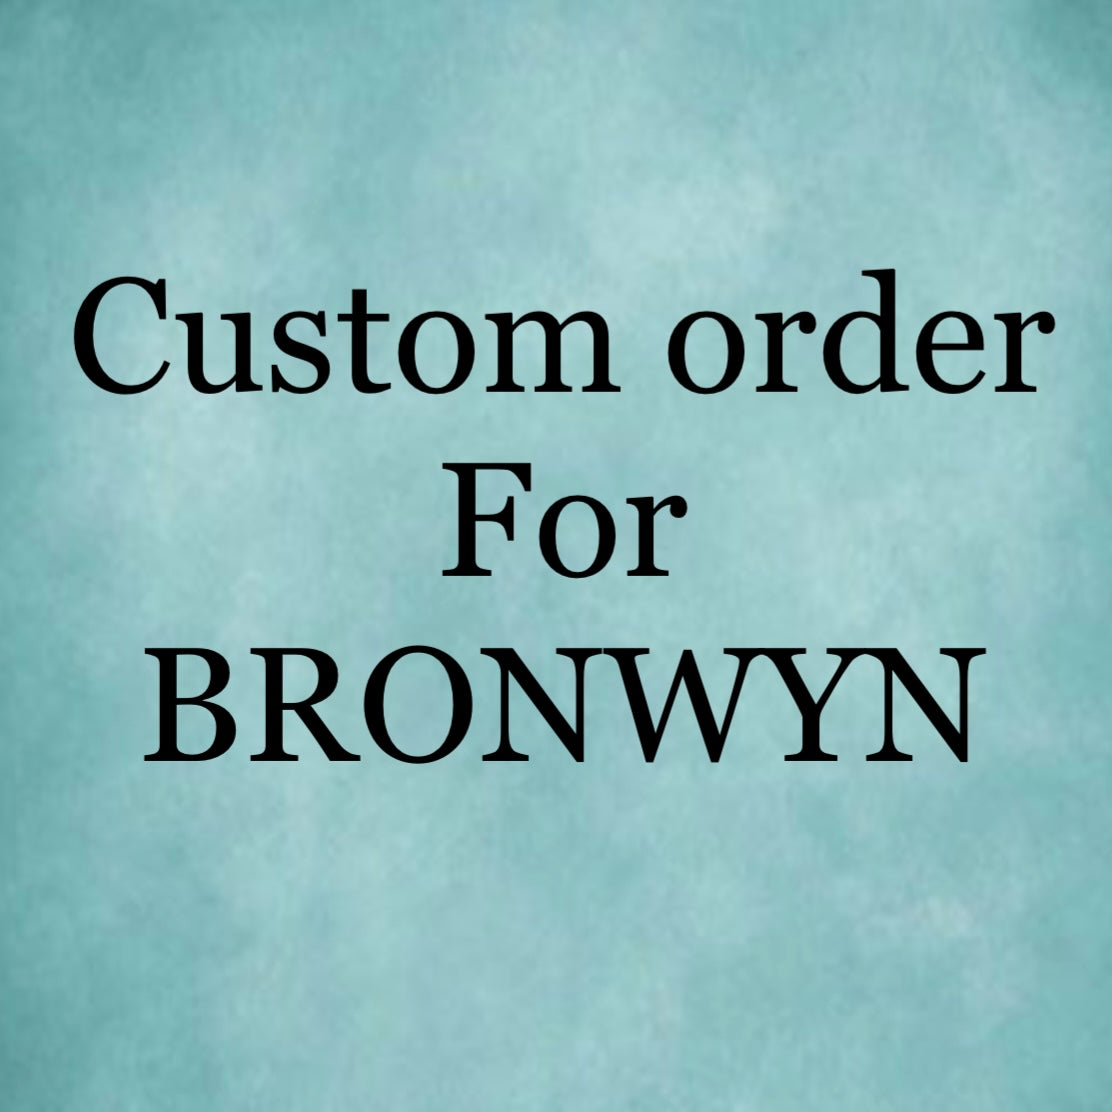 Custom order for BRONWYN